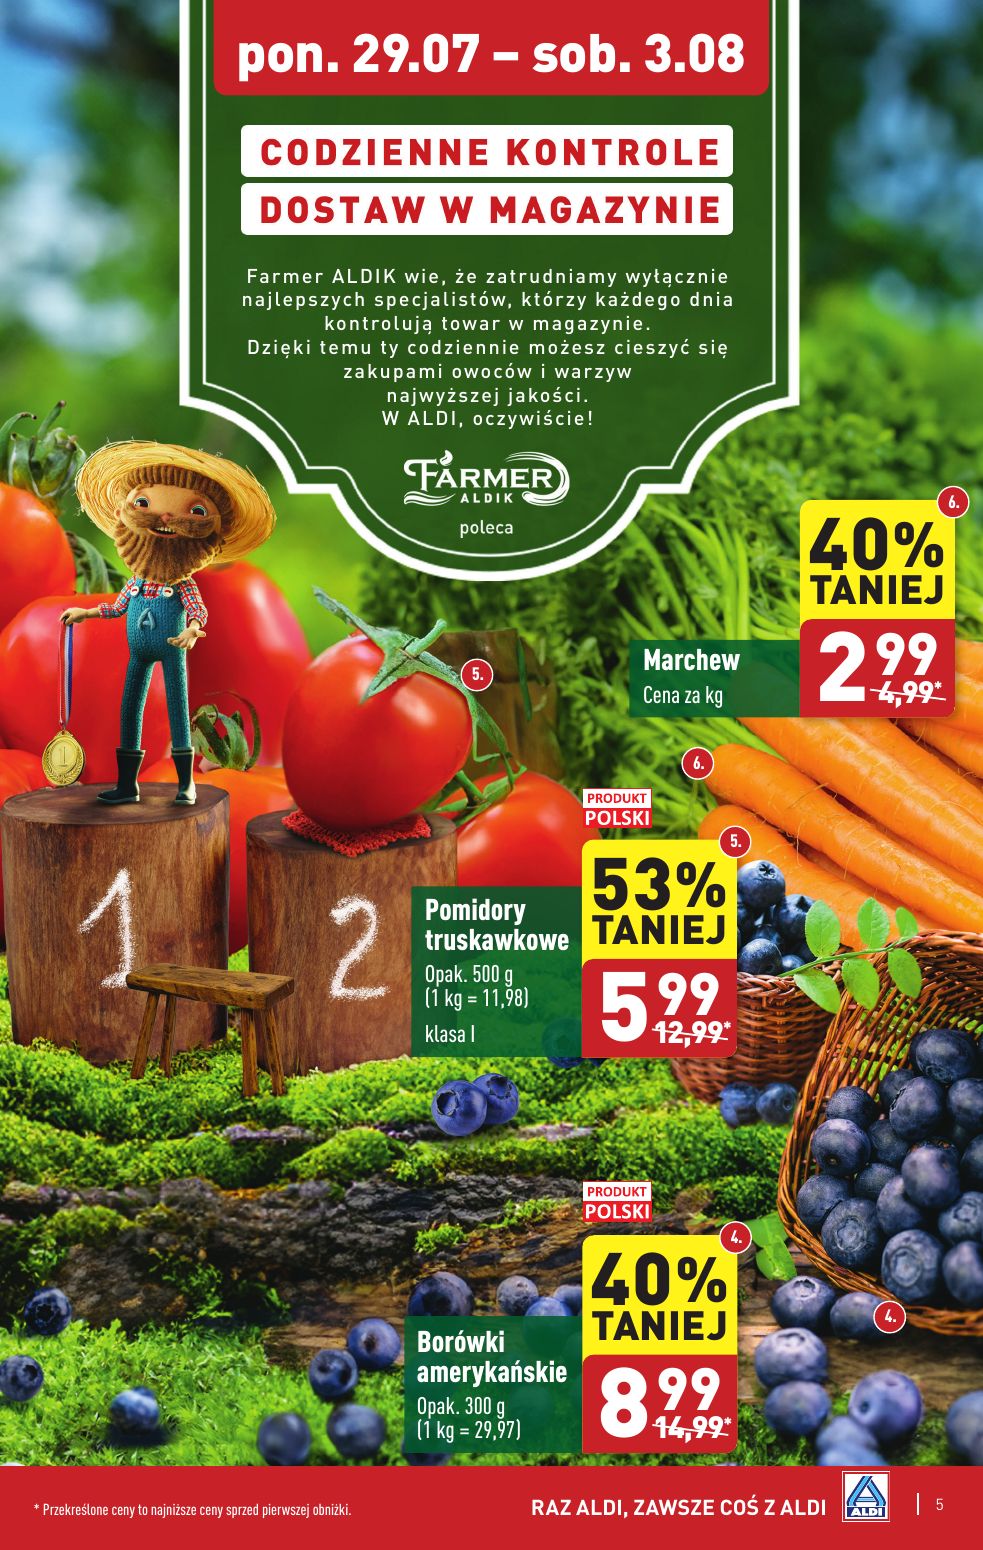 gazetka promocyjna ALDI Farmer Aldik poleca świeże owoce i warzywa - Strona 5